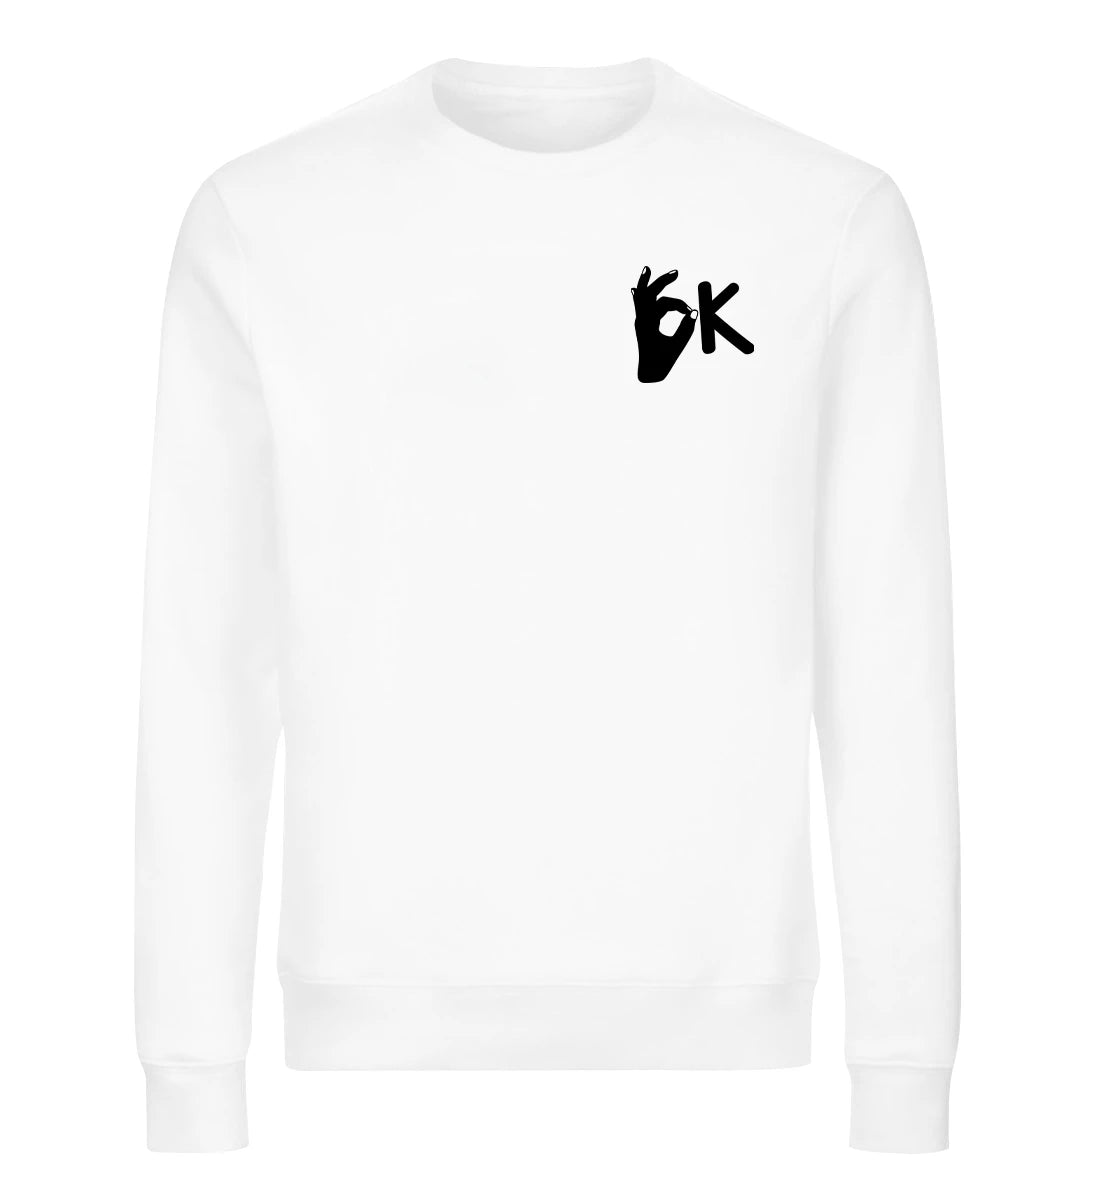 OK - Bio Sweater